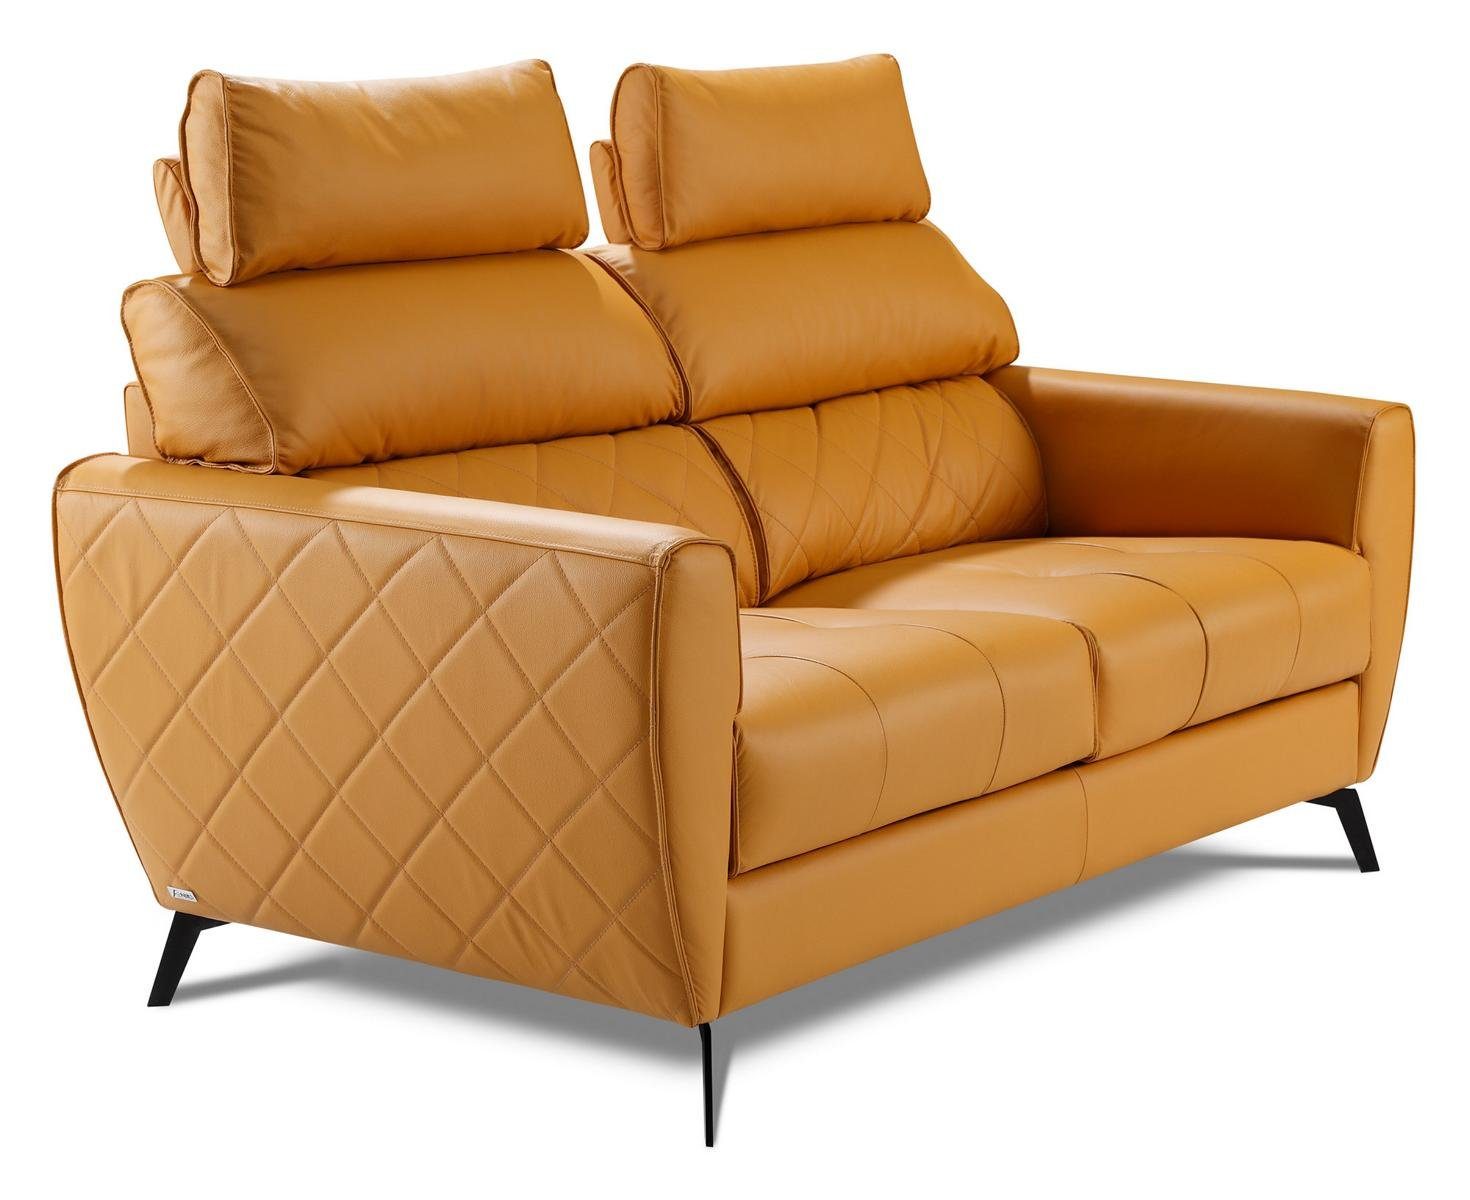 JVmoebel Wohnzimmer-Set, Modern Design Couch Sitz Polster Komplett Set Garnitur 3+2 Textil Gelb